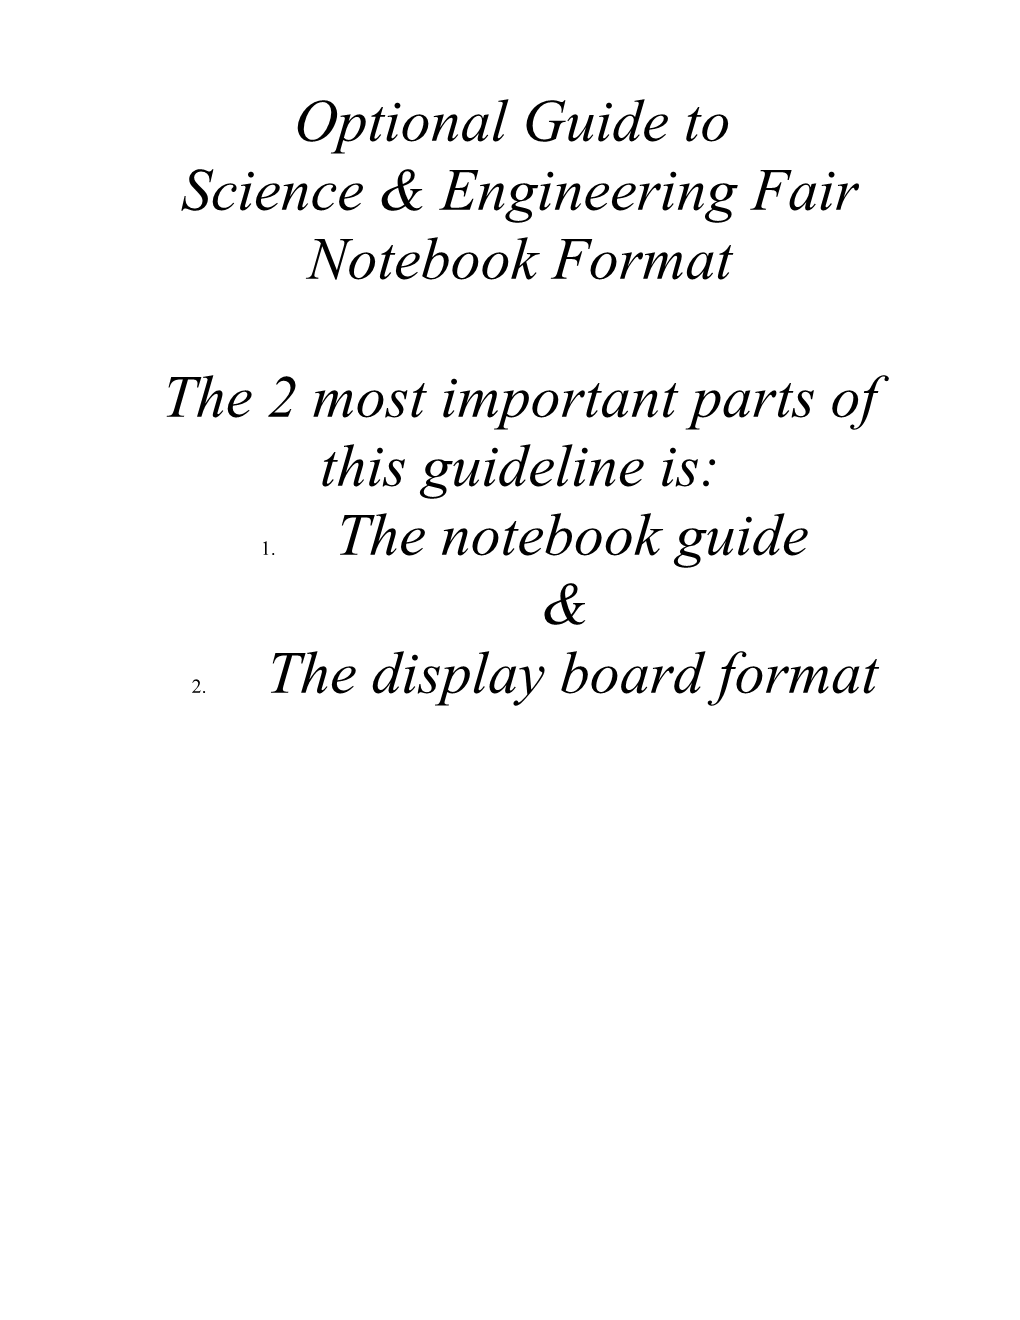 Science & Engineering Fair Notebook Format